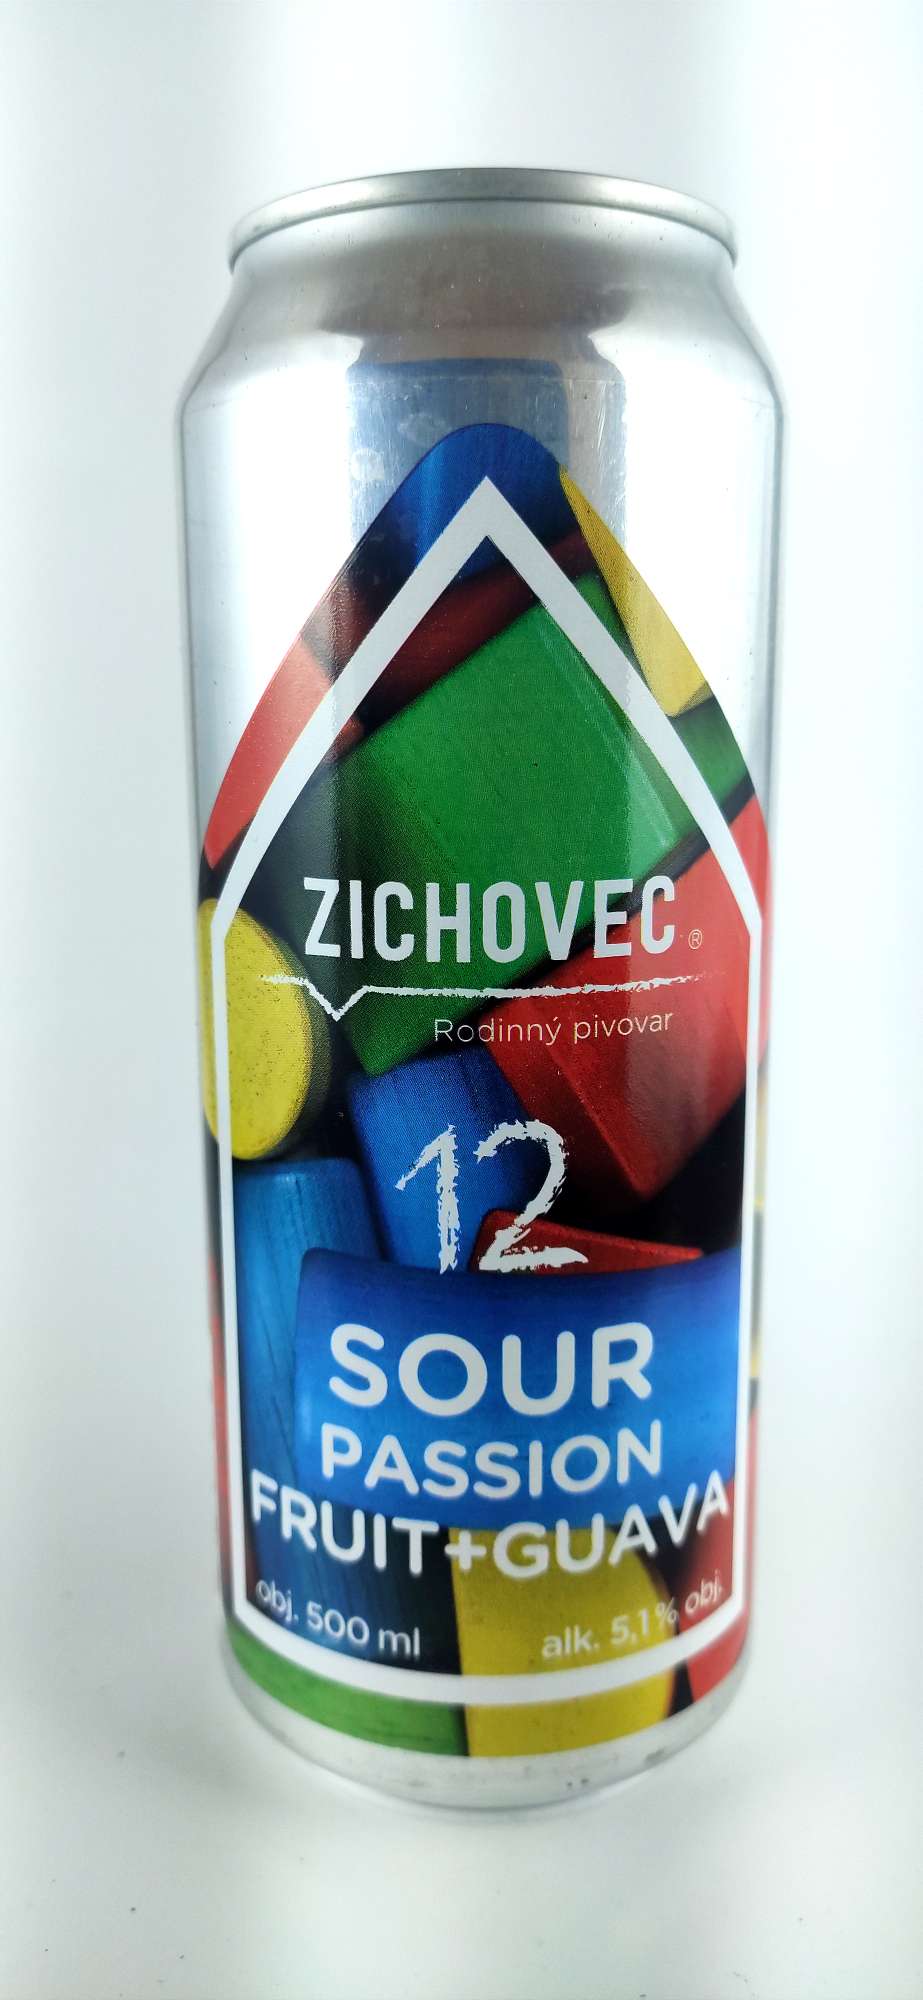 Zichovec Sour Passion Fruit + Guava 12°